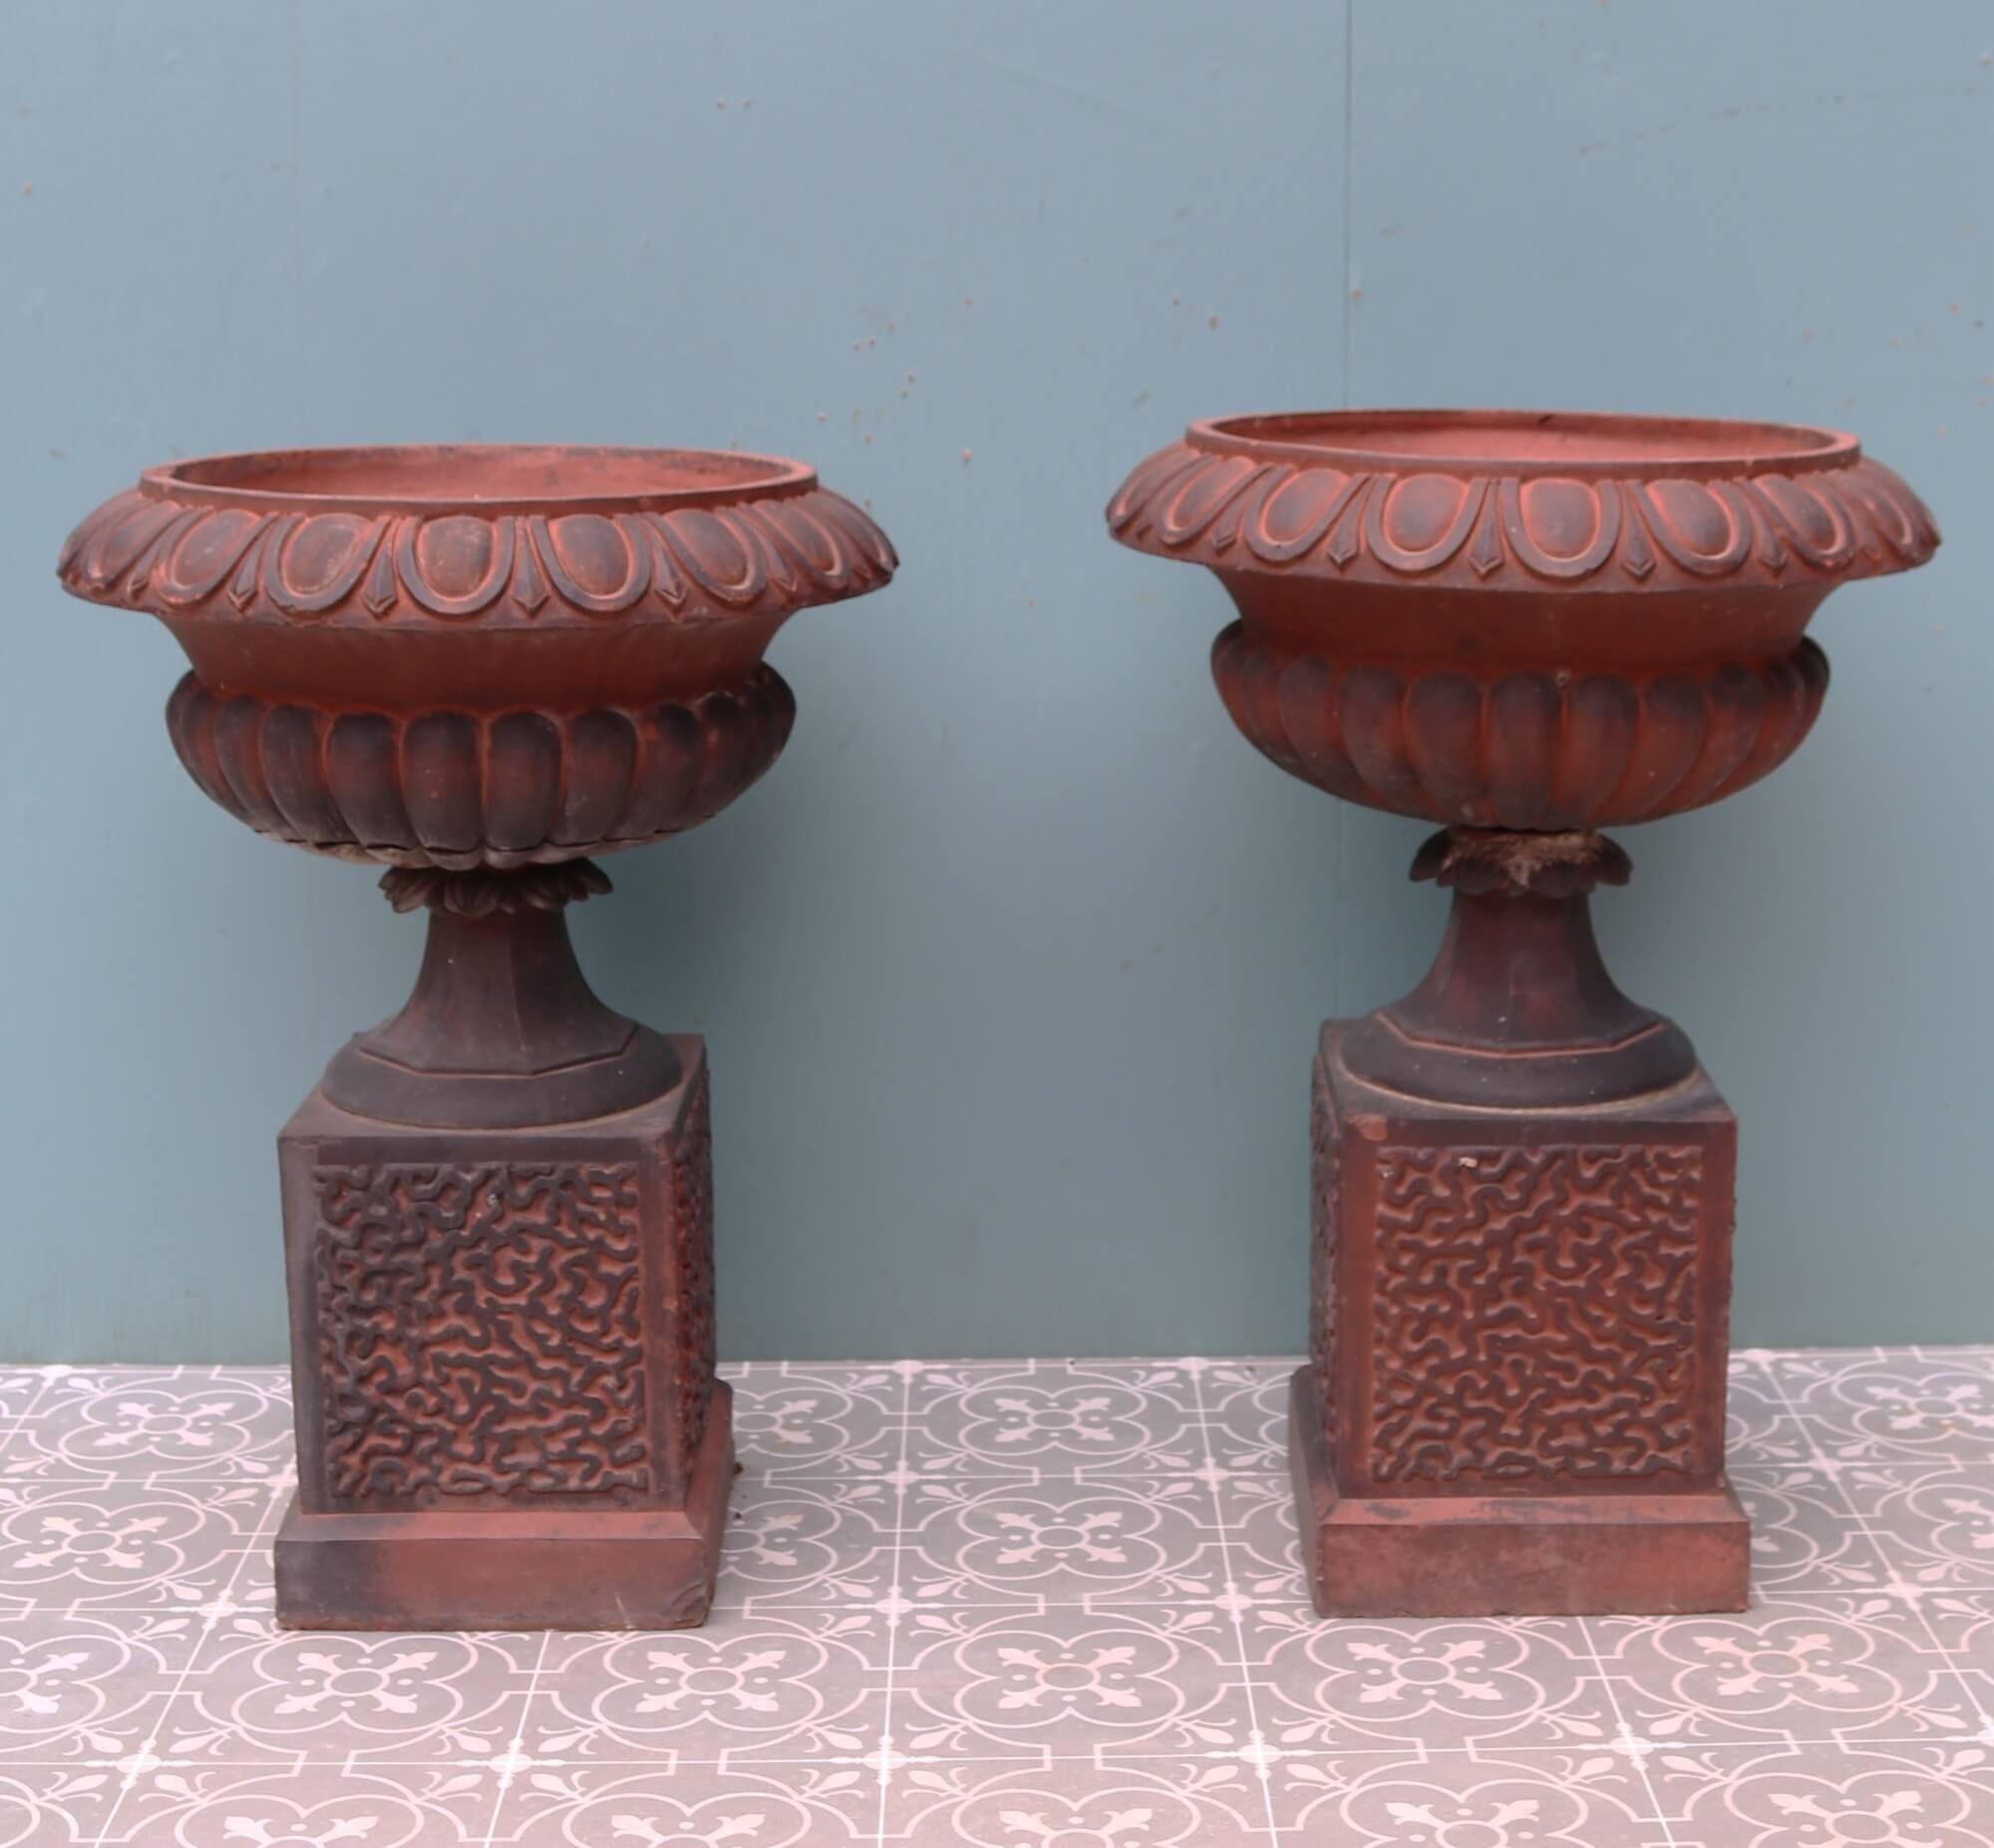 Dieses Paar Terrakotta-Gartenurnen stammt aus dem späten 19. Jahrhundert und ist eine schöne Ergänzung für einen ländlichen Garten. Sie sind aus roter Terrakotta gefertigt und weisen stellenweise eine dunkle Patina auf, die auf ihr Alter schließen